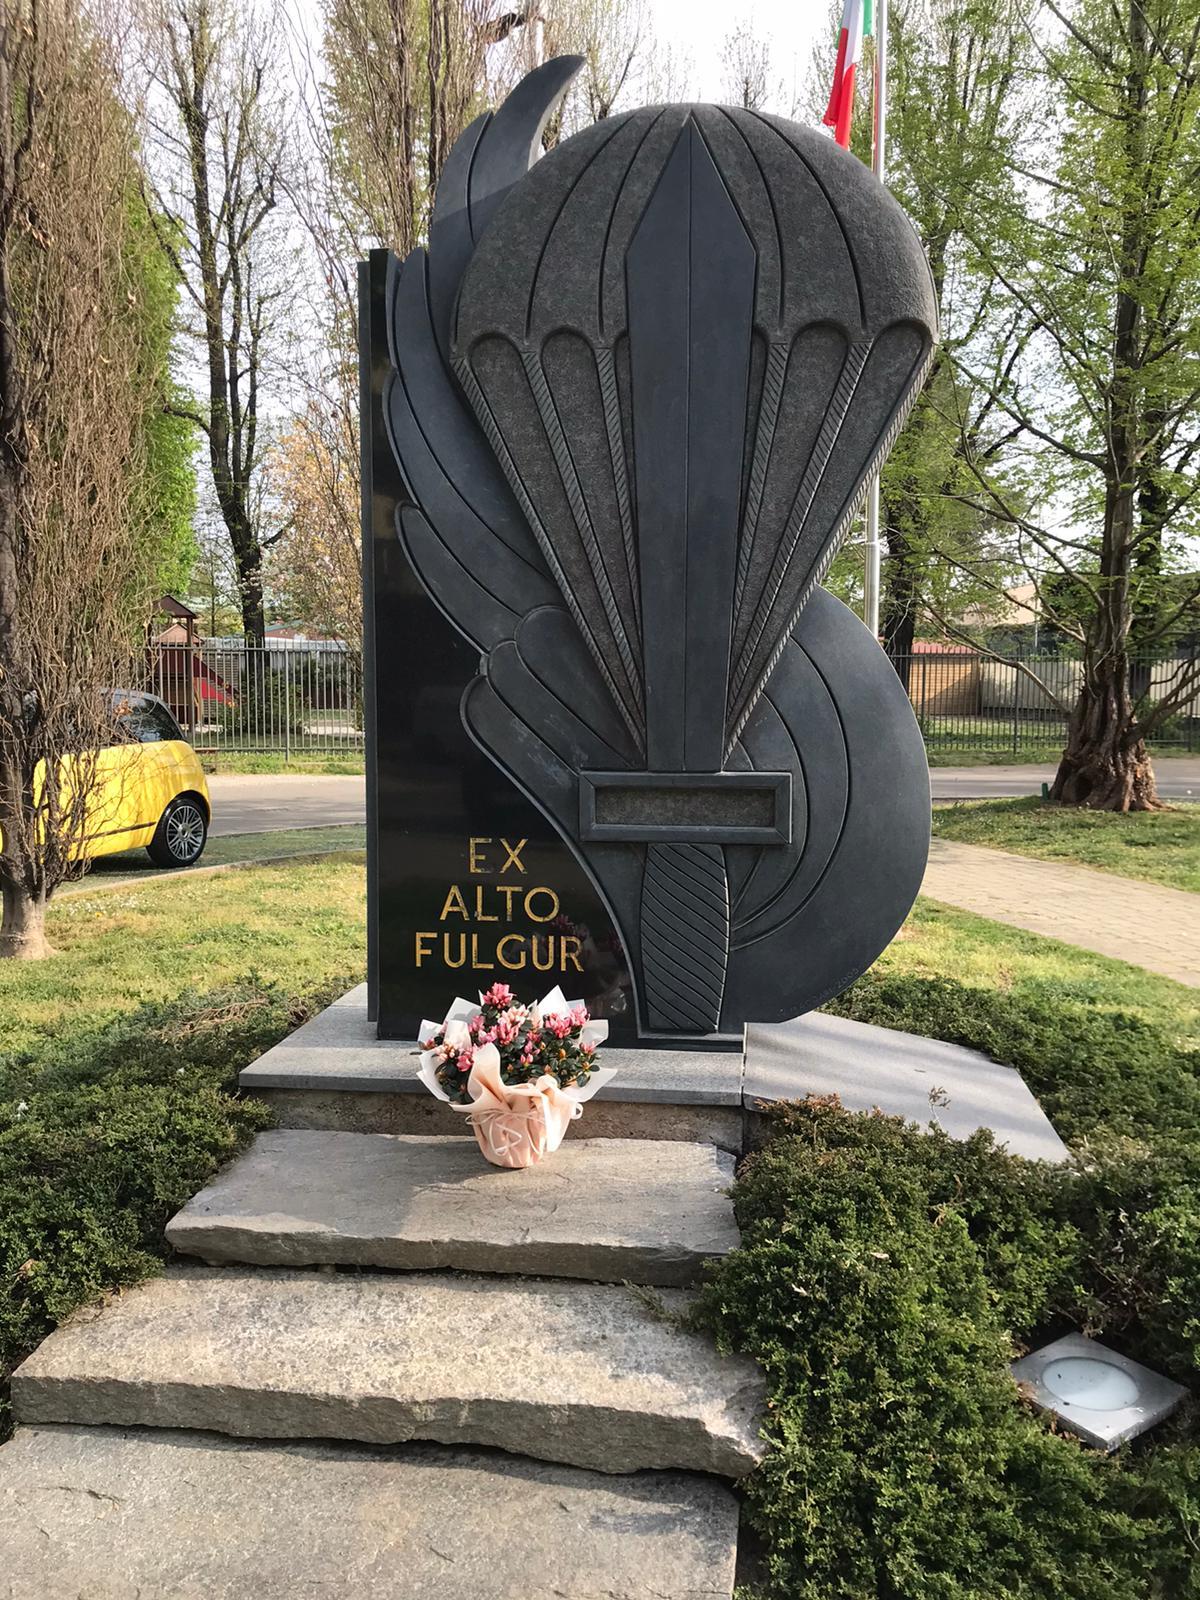 Saronno: non solo vandalismi, omaggio floreale al monumento dei parà